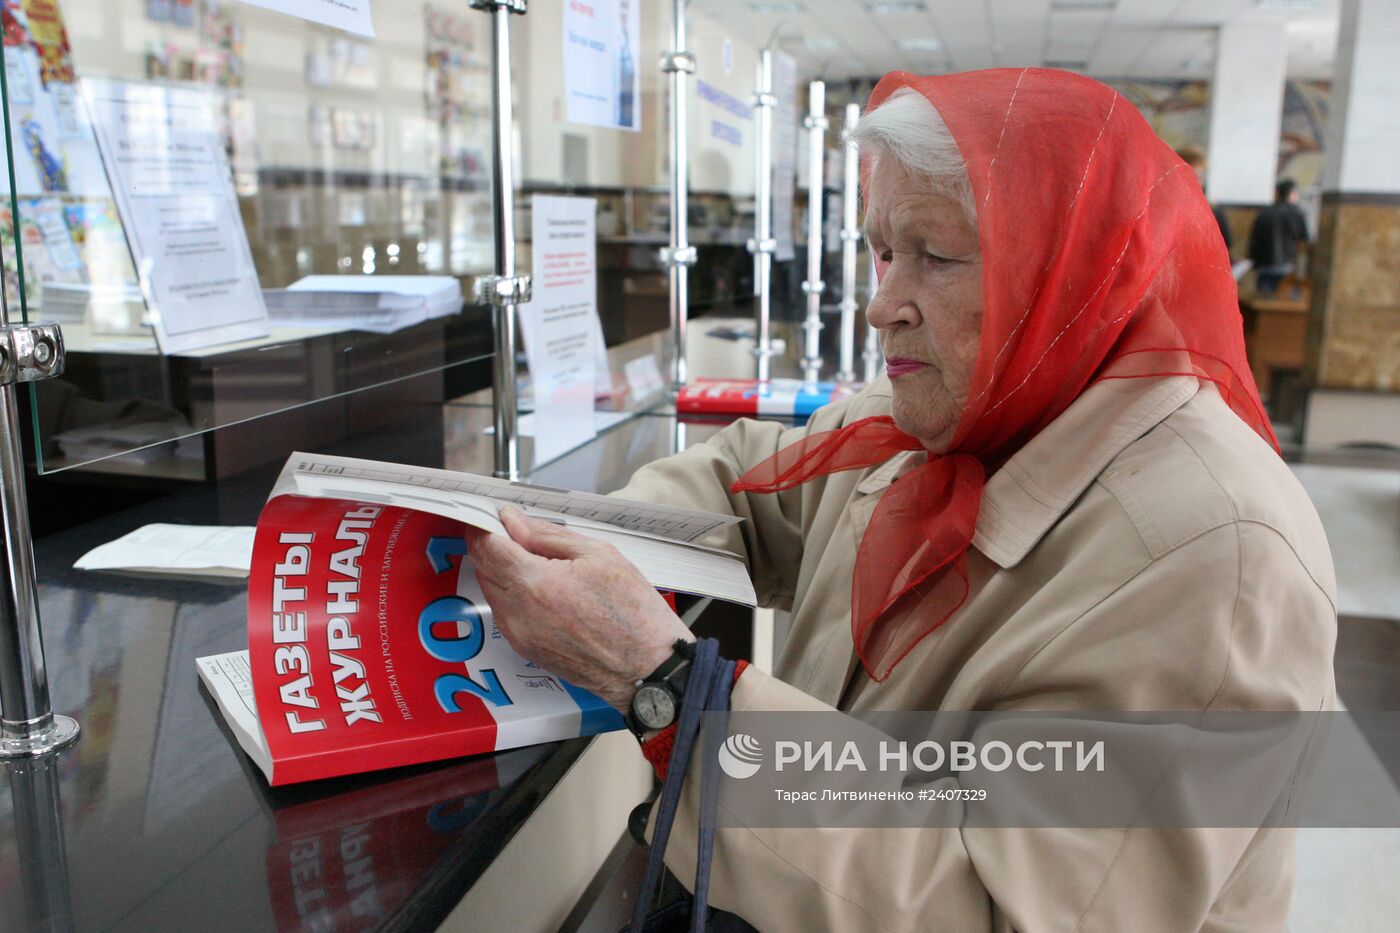 В почтовых отделениях Крыма появились российские марки и каталоги подписки на российскую прессу